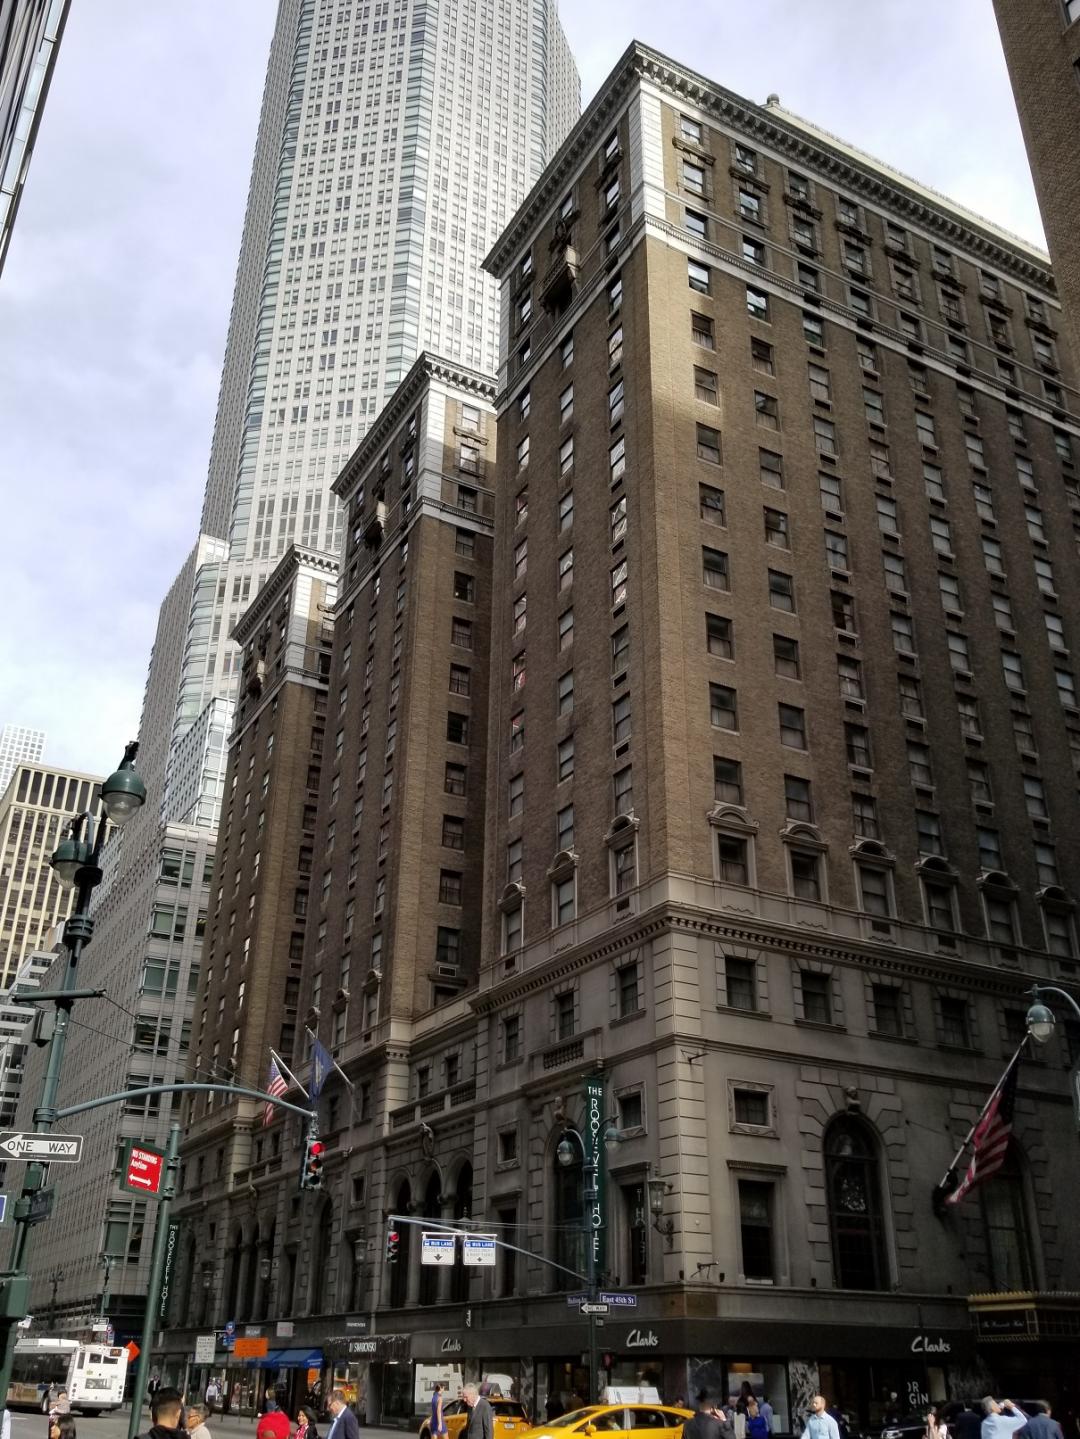 ザ ルーズベルト ホテル ニューヨーク シティ ニューヨークのおすすめホテル 現地を知り尽くしたガイドによる口コミ情報 トラベルコ